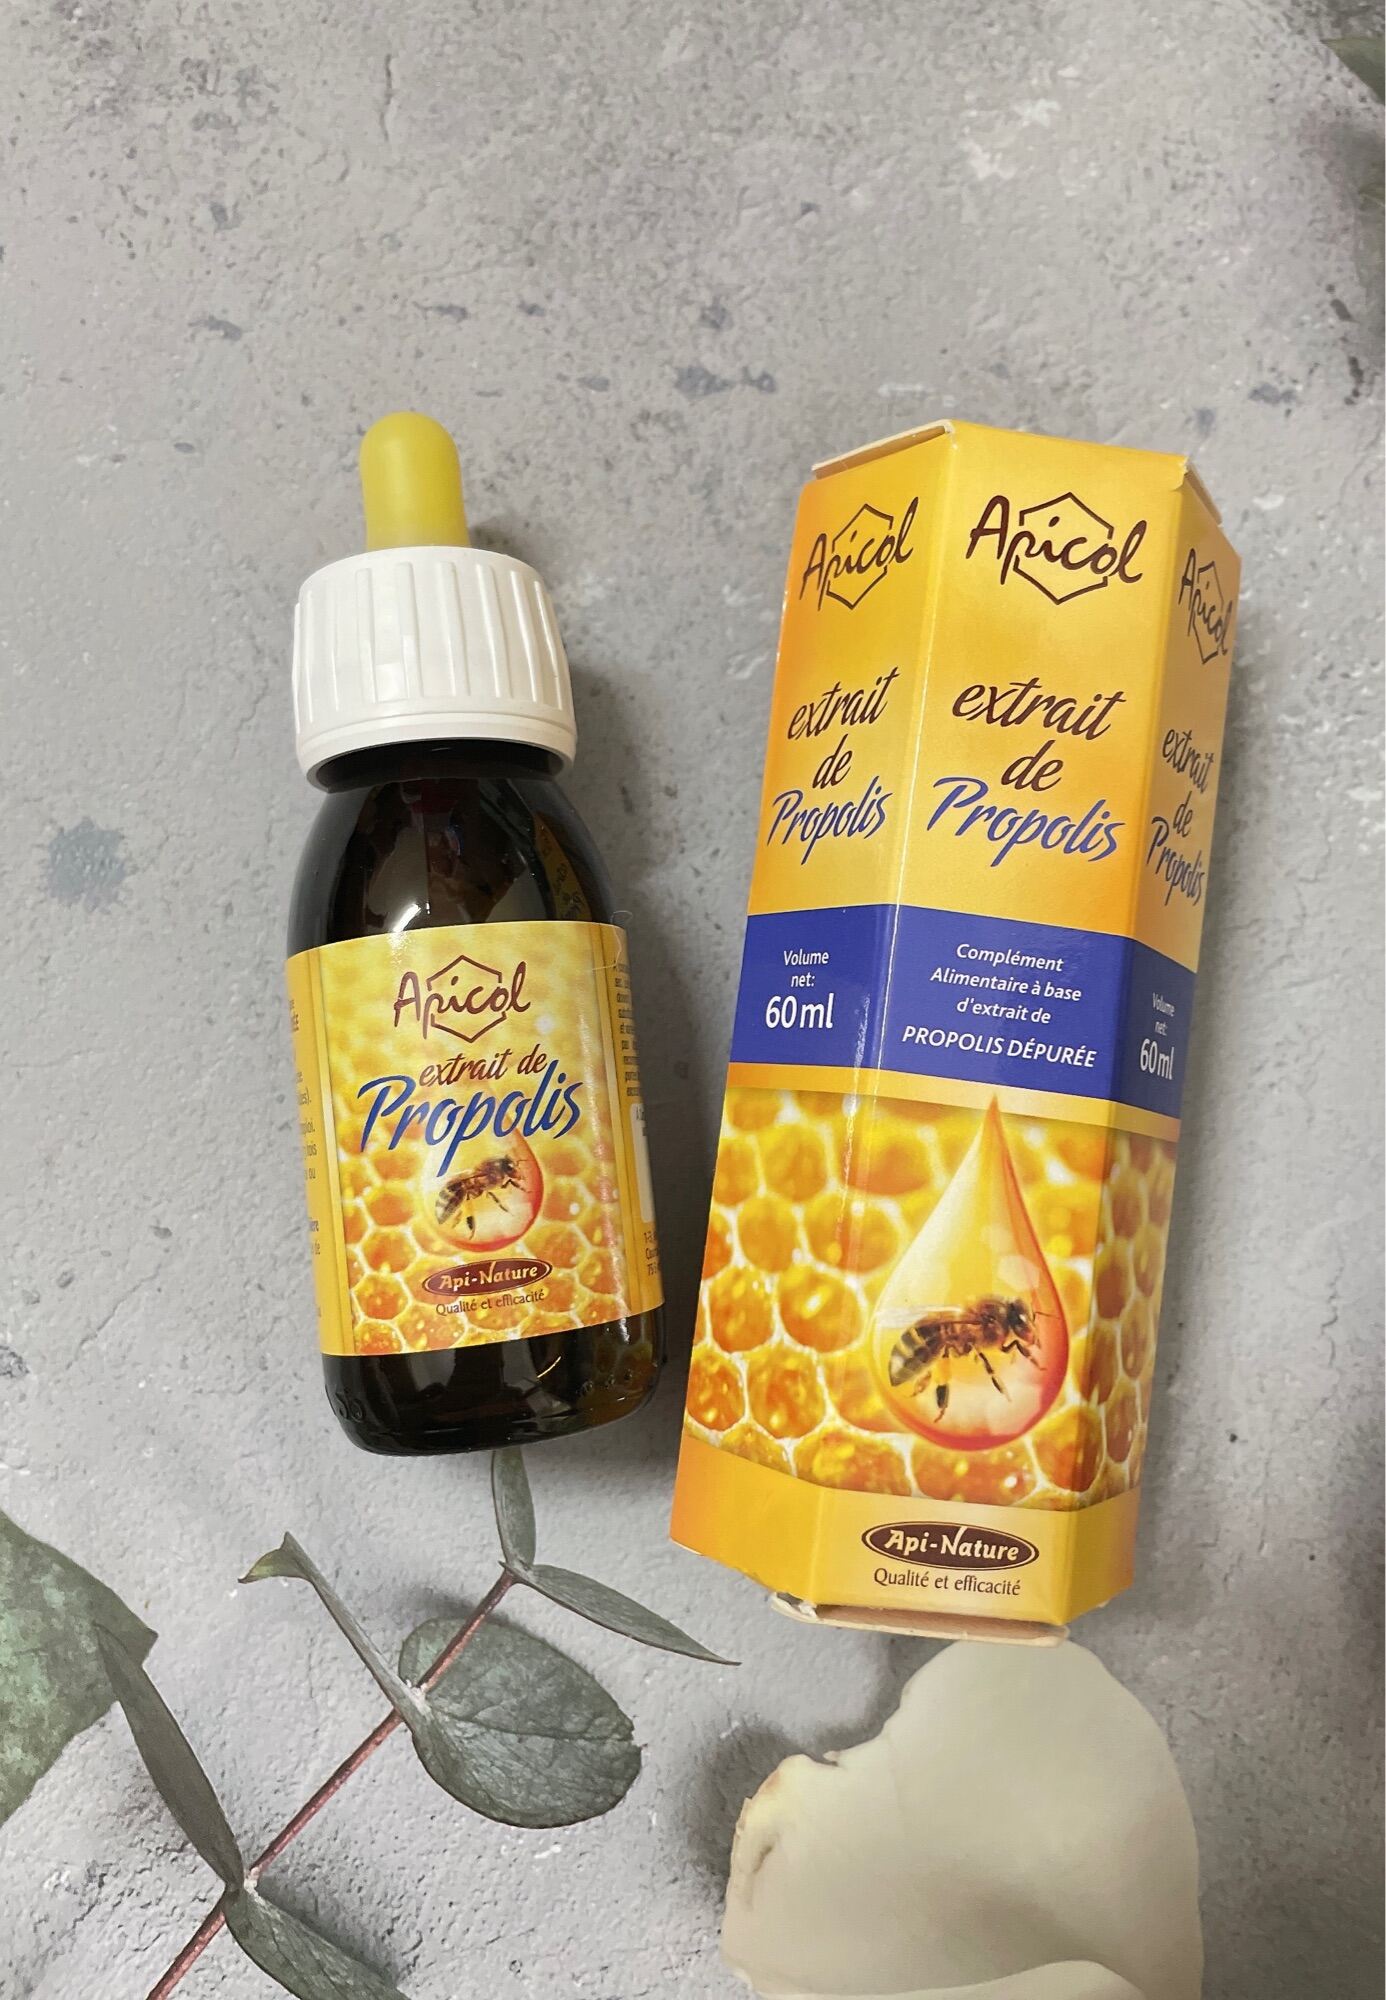 Extrait de Propolis keo ong đậm đặc không cồn giúp chống viêm, diệt khuẩn